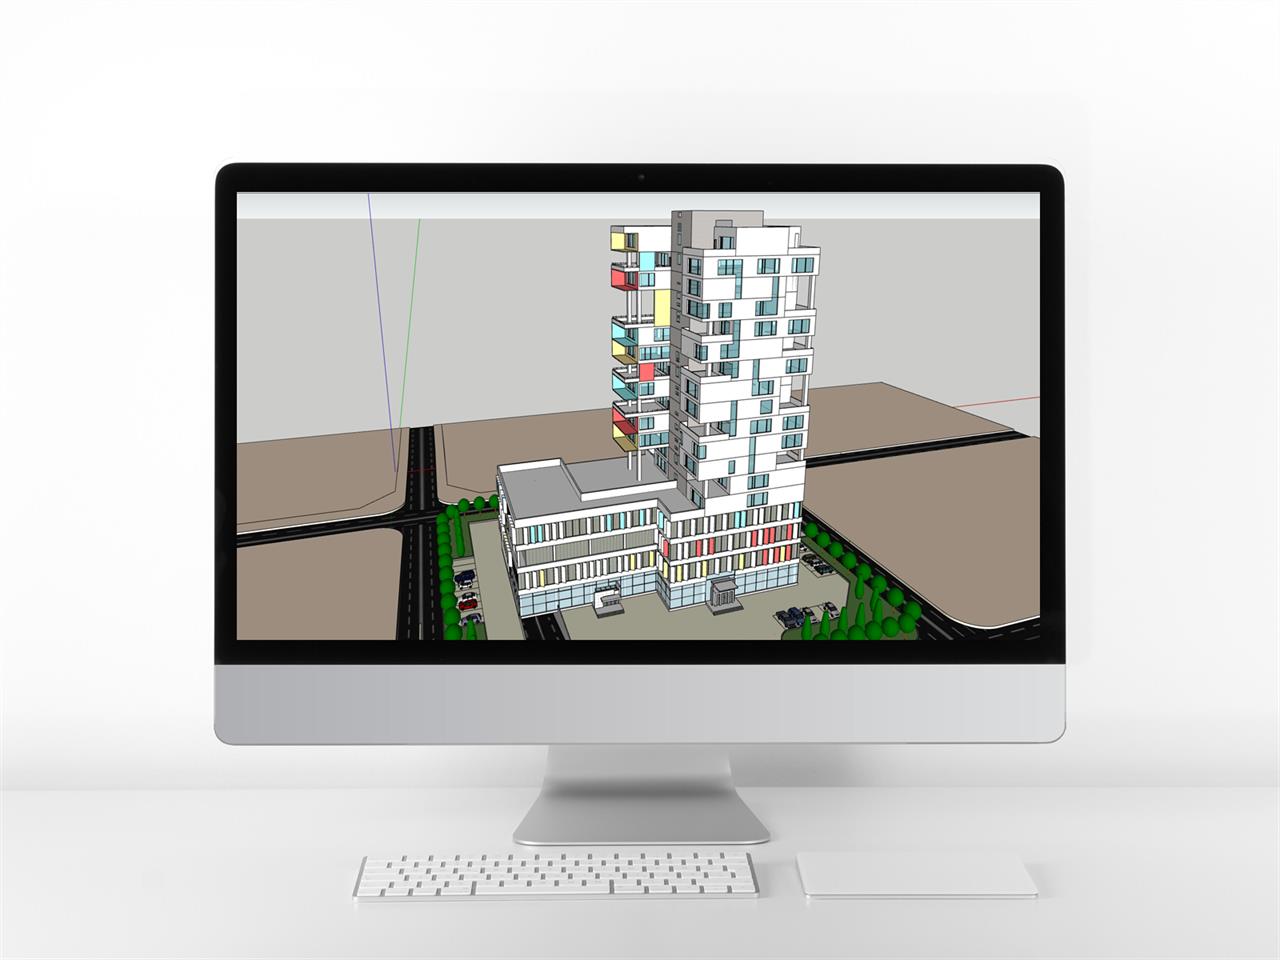 깔끔한 사무행정시설 디자인 웹툰배경 모델 사이트 미리보기